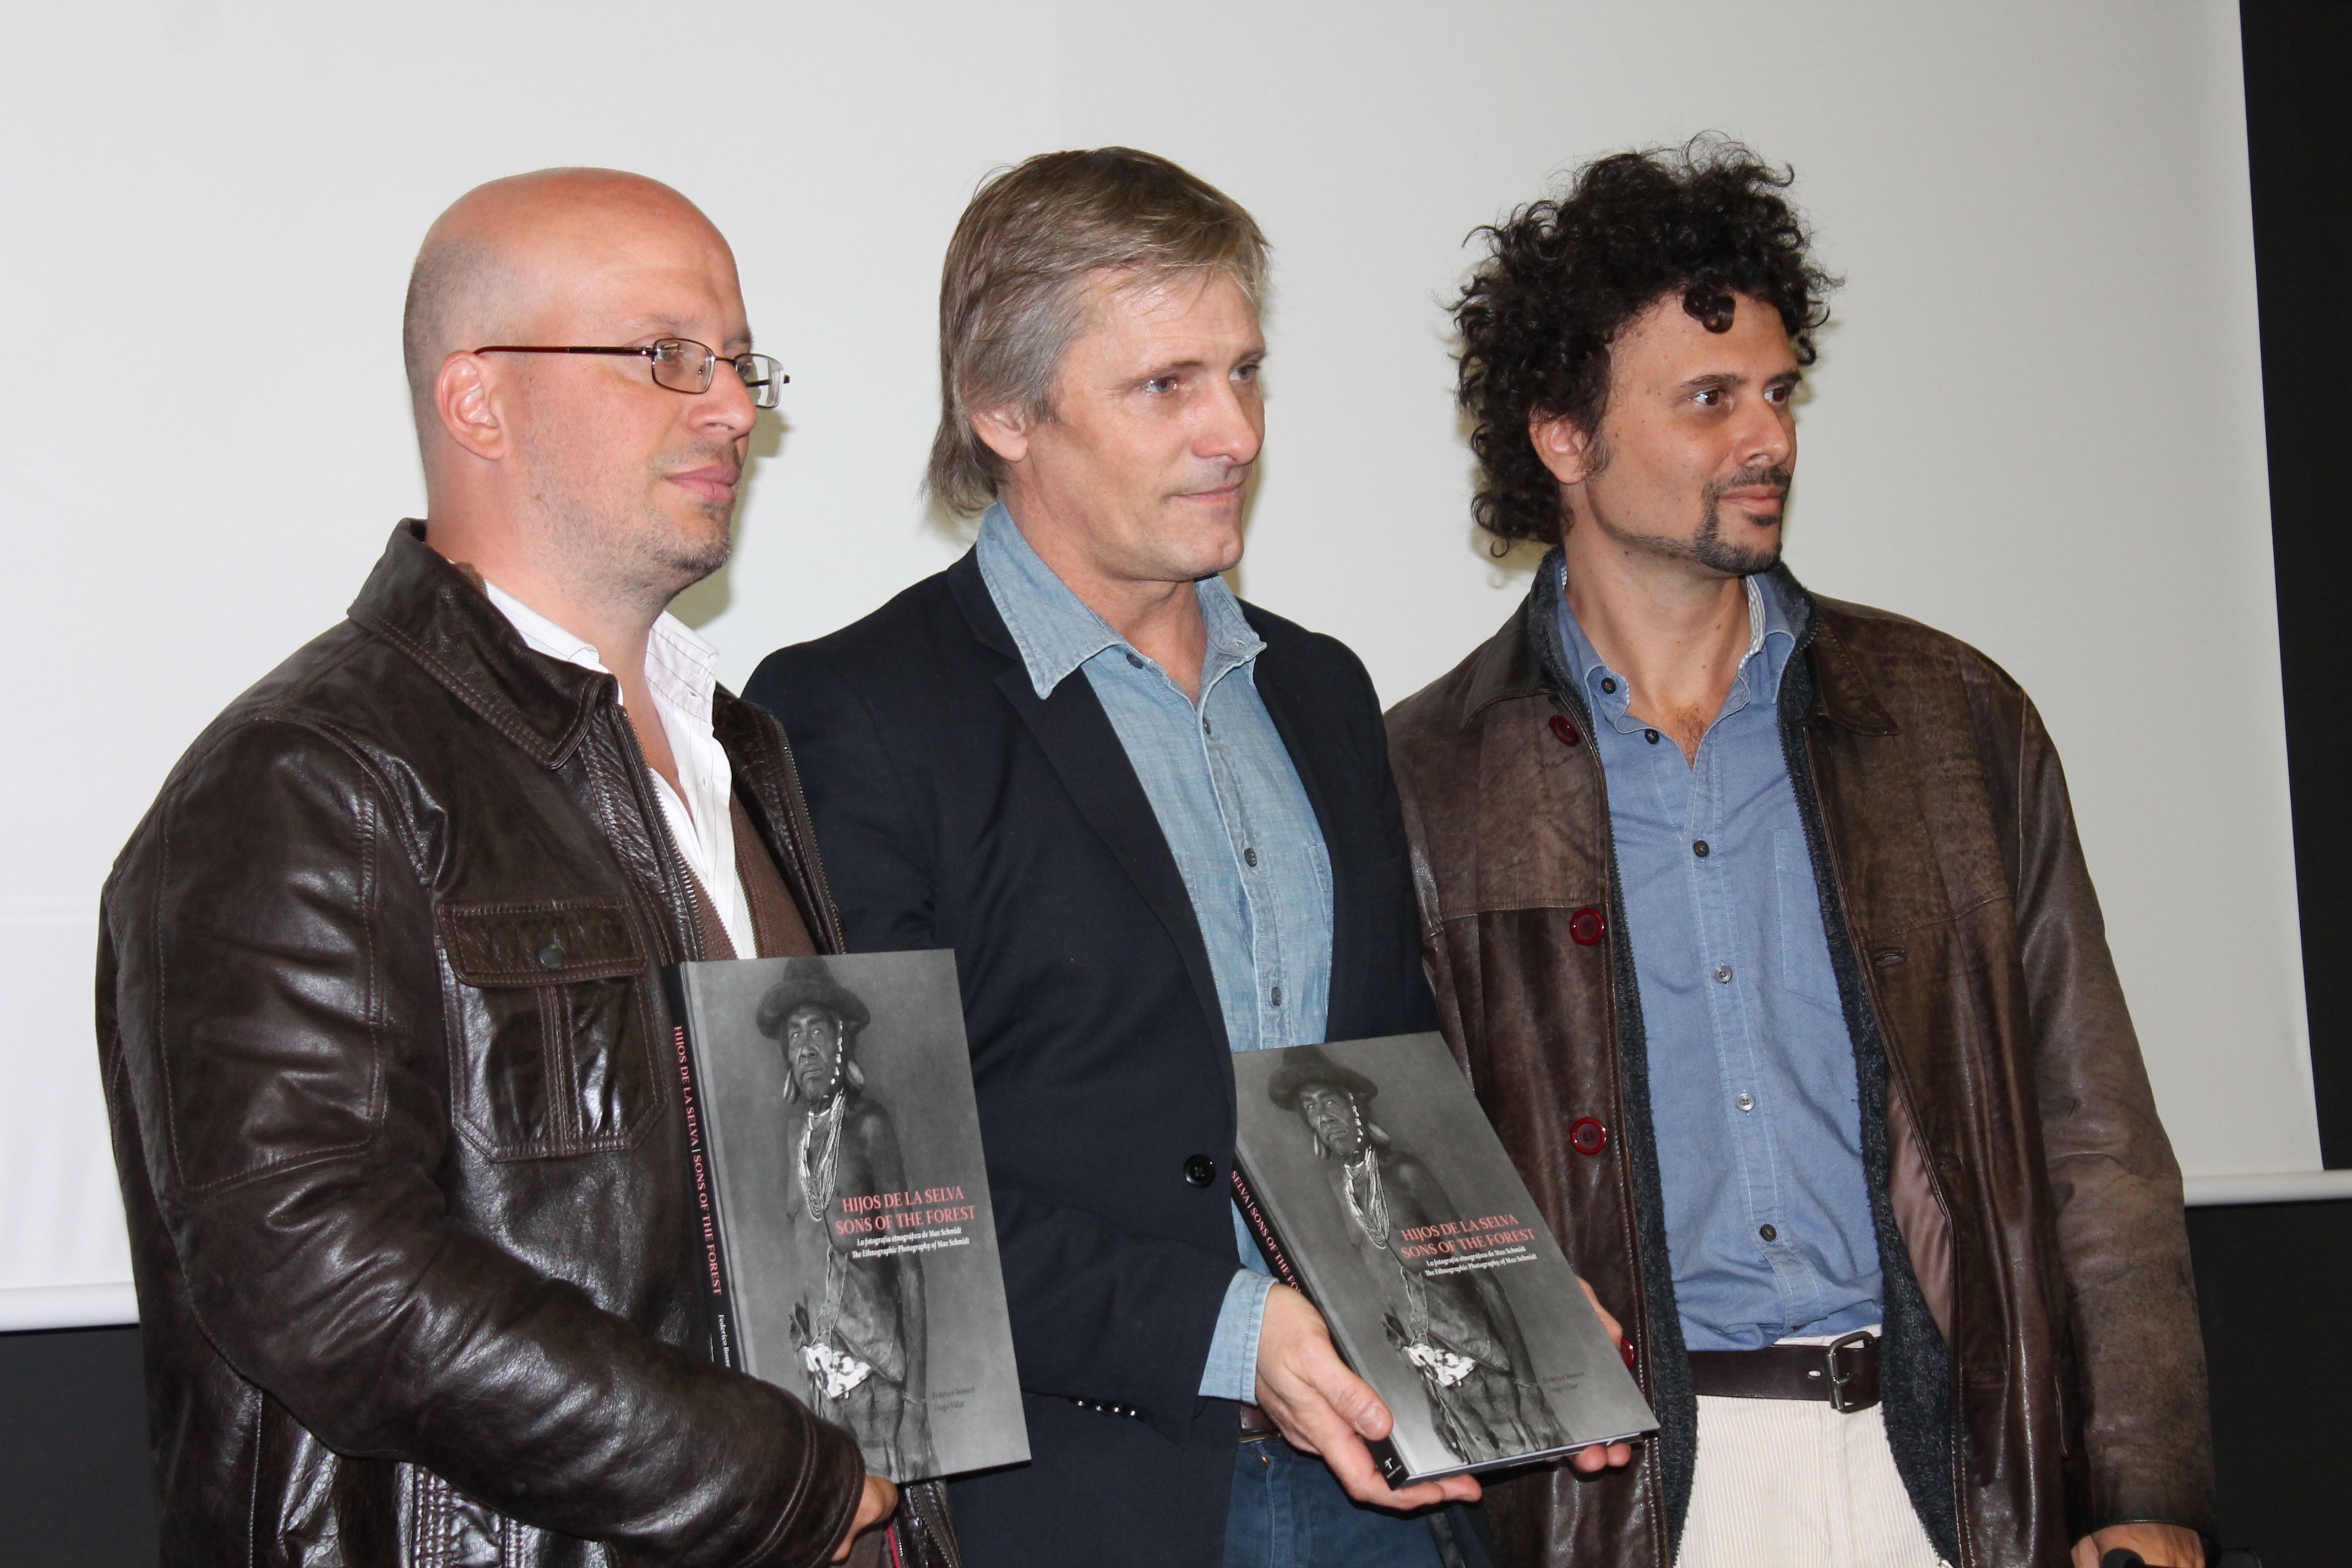 En la foto, Viggo Mortensen acompañado de los antropólogos argentinos Diego Villar y Federico Bossert